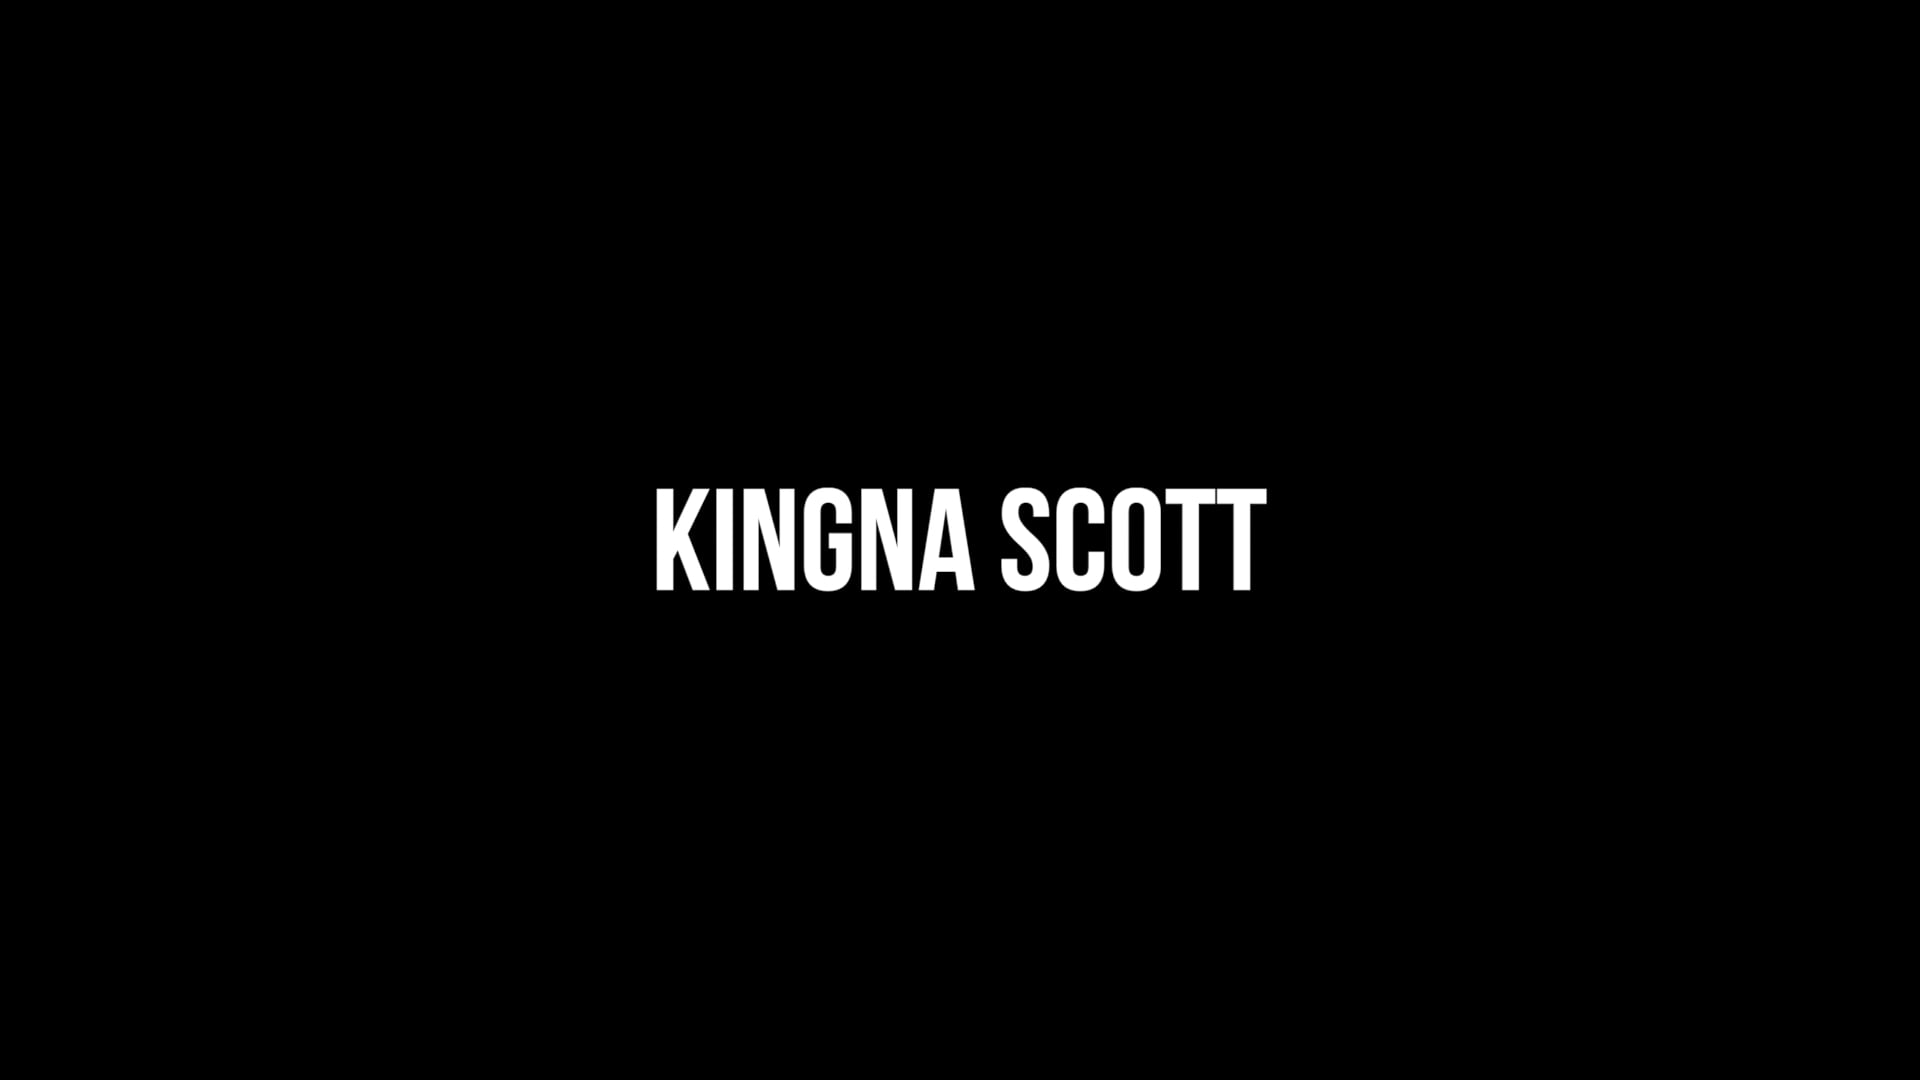 Kingna Scott